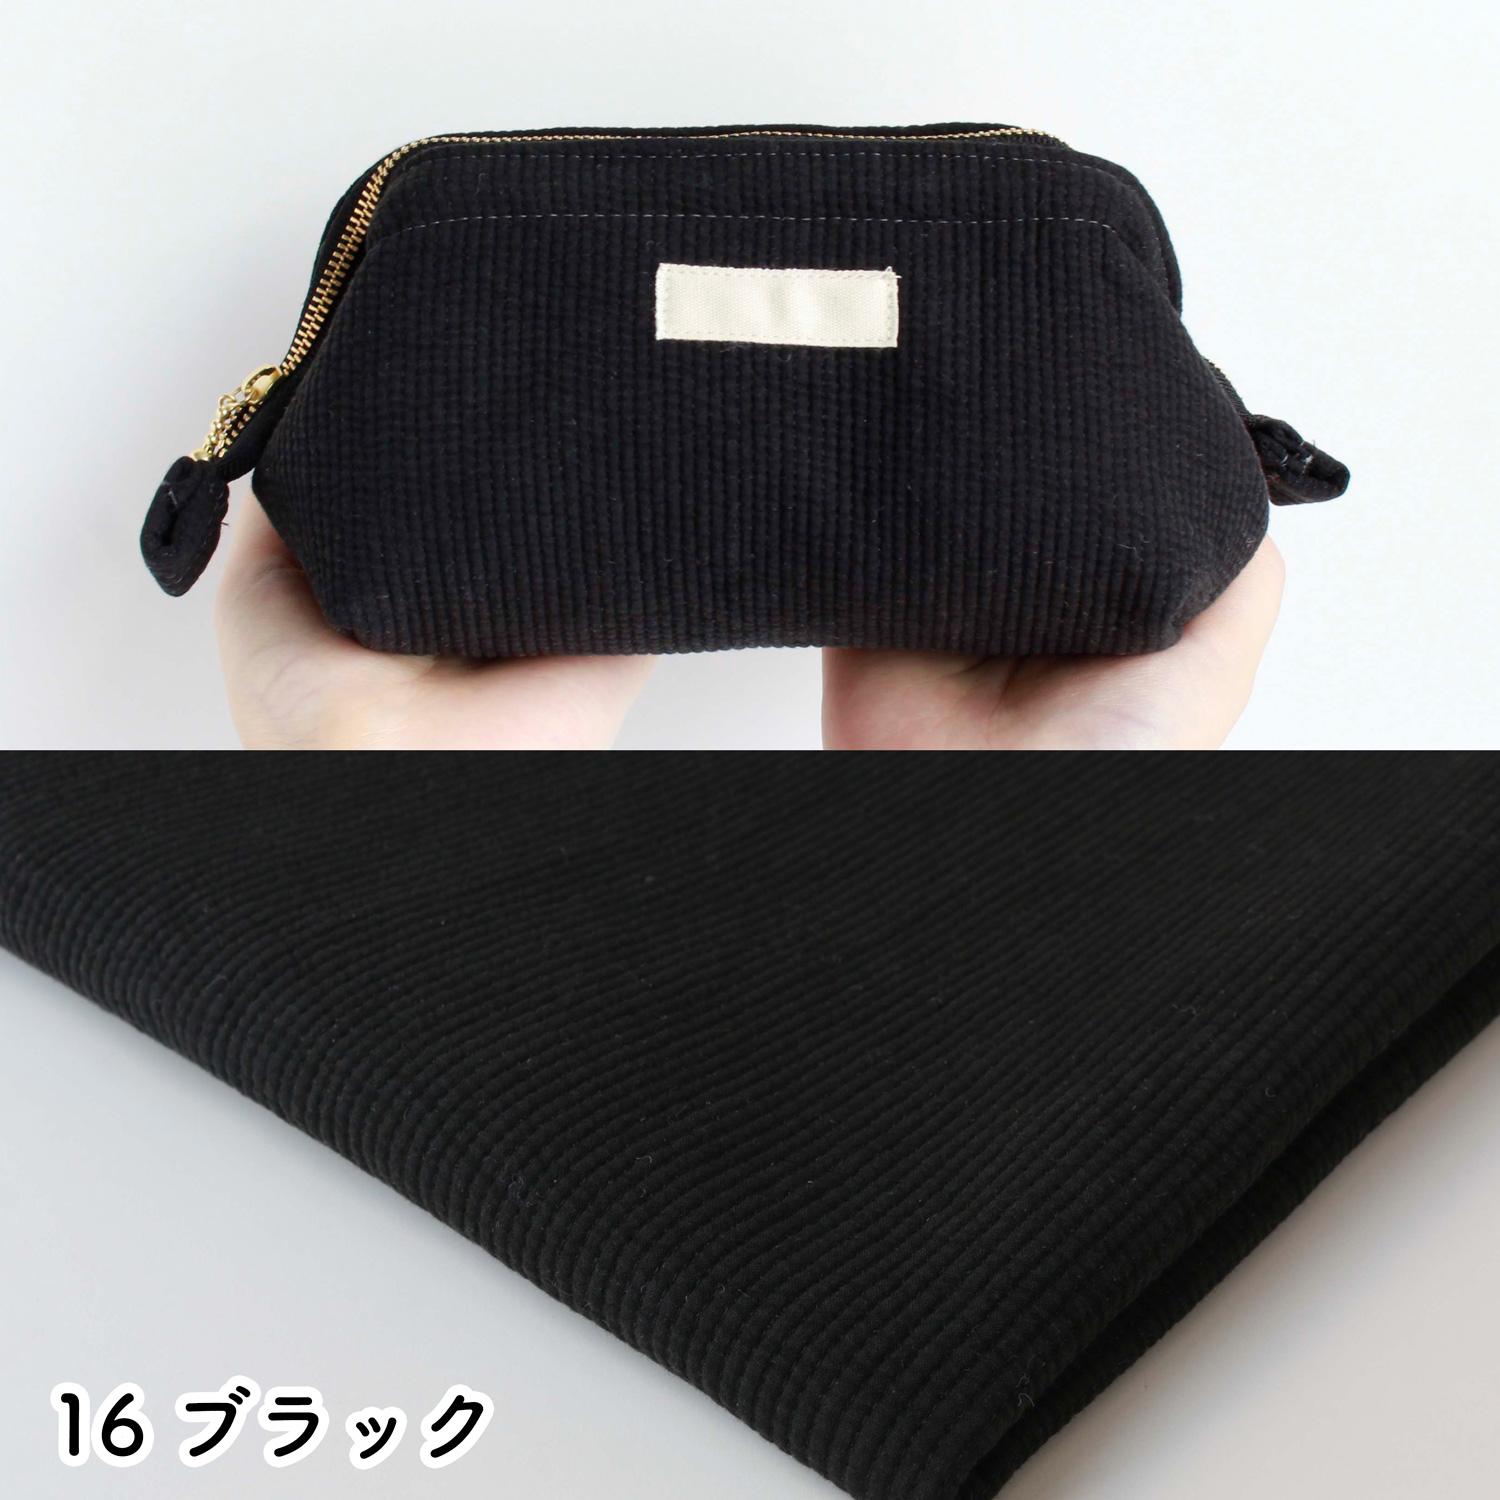 ■NBY303R nubi ヌビ 韓国伝統キルティング生地 巾3mmサイズ 原反約8m乱巻 (巻) 19